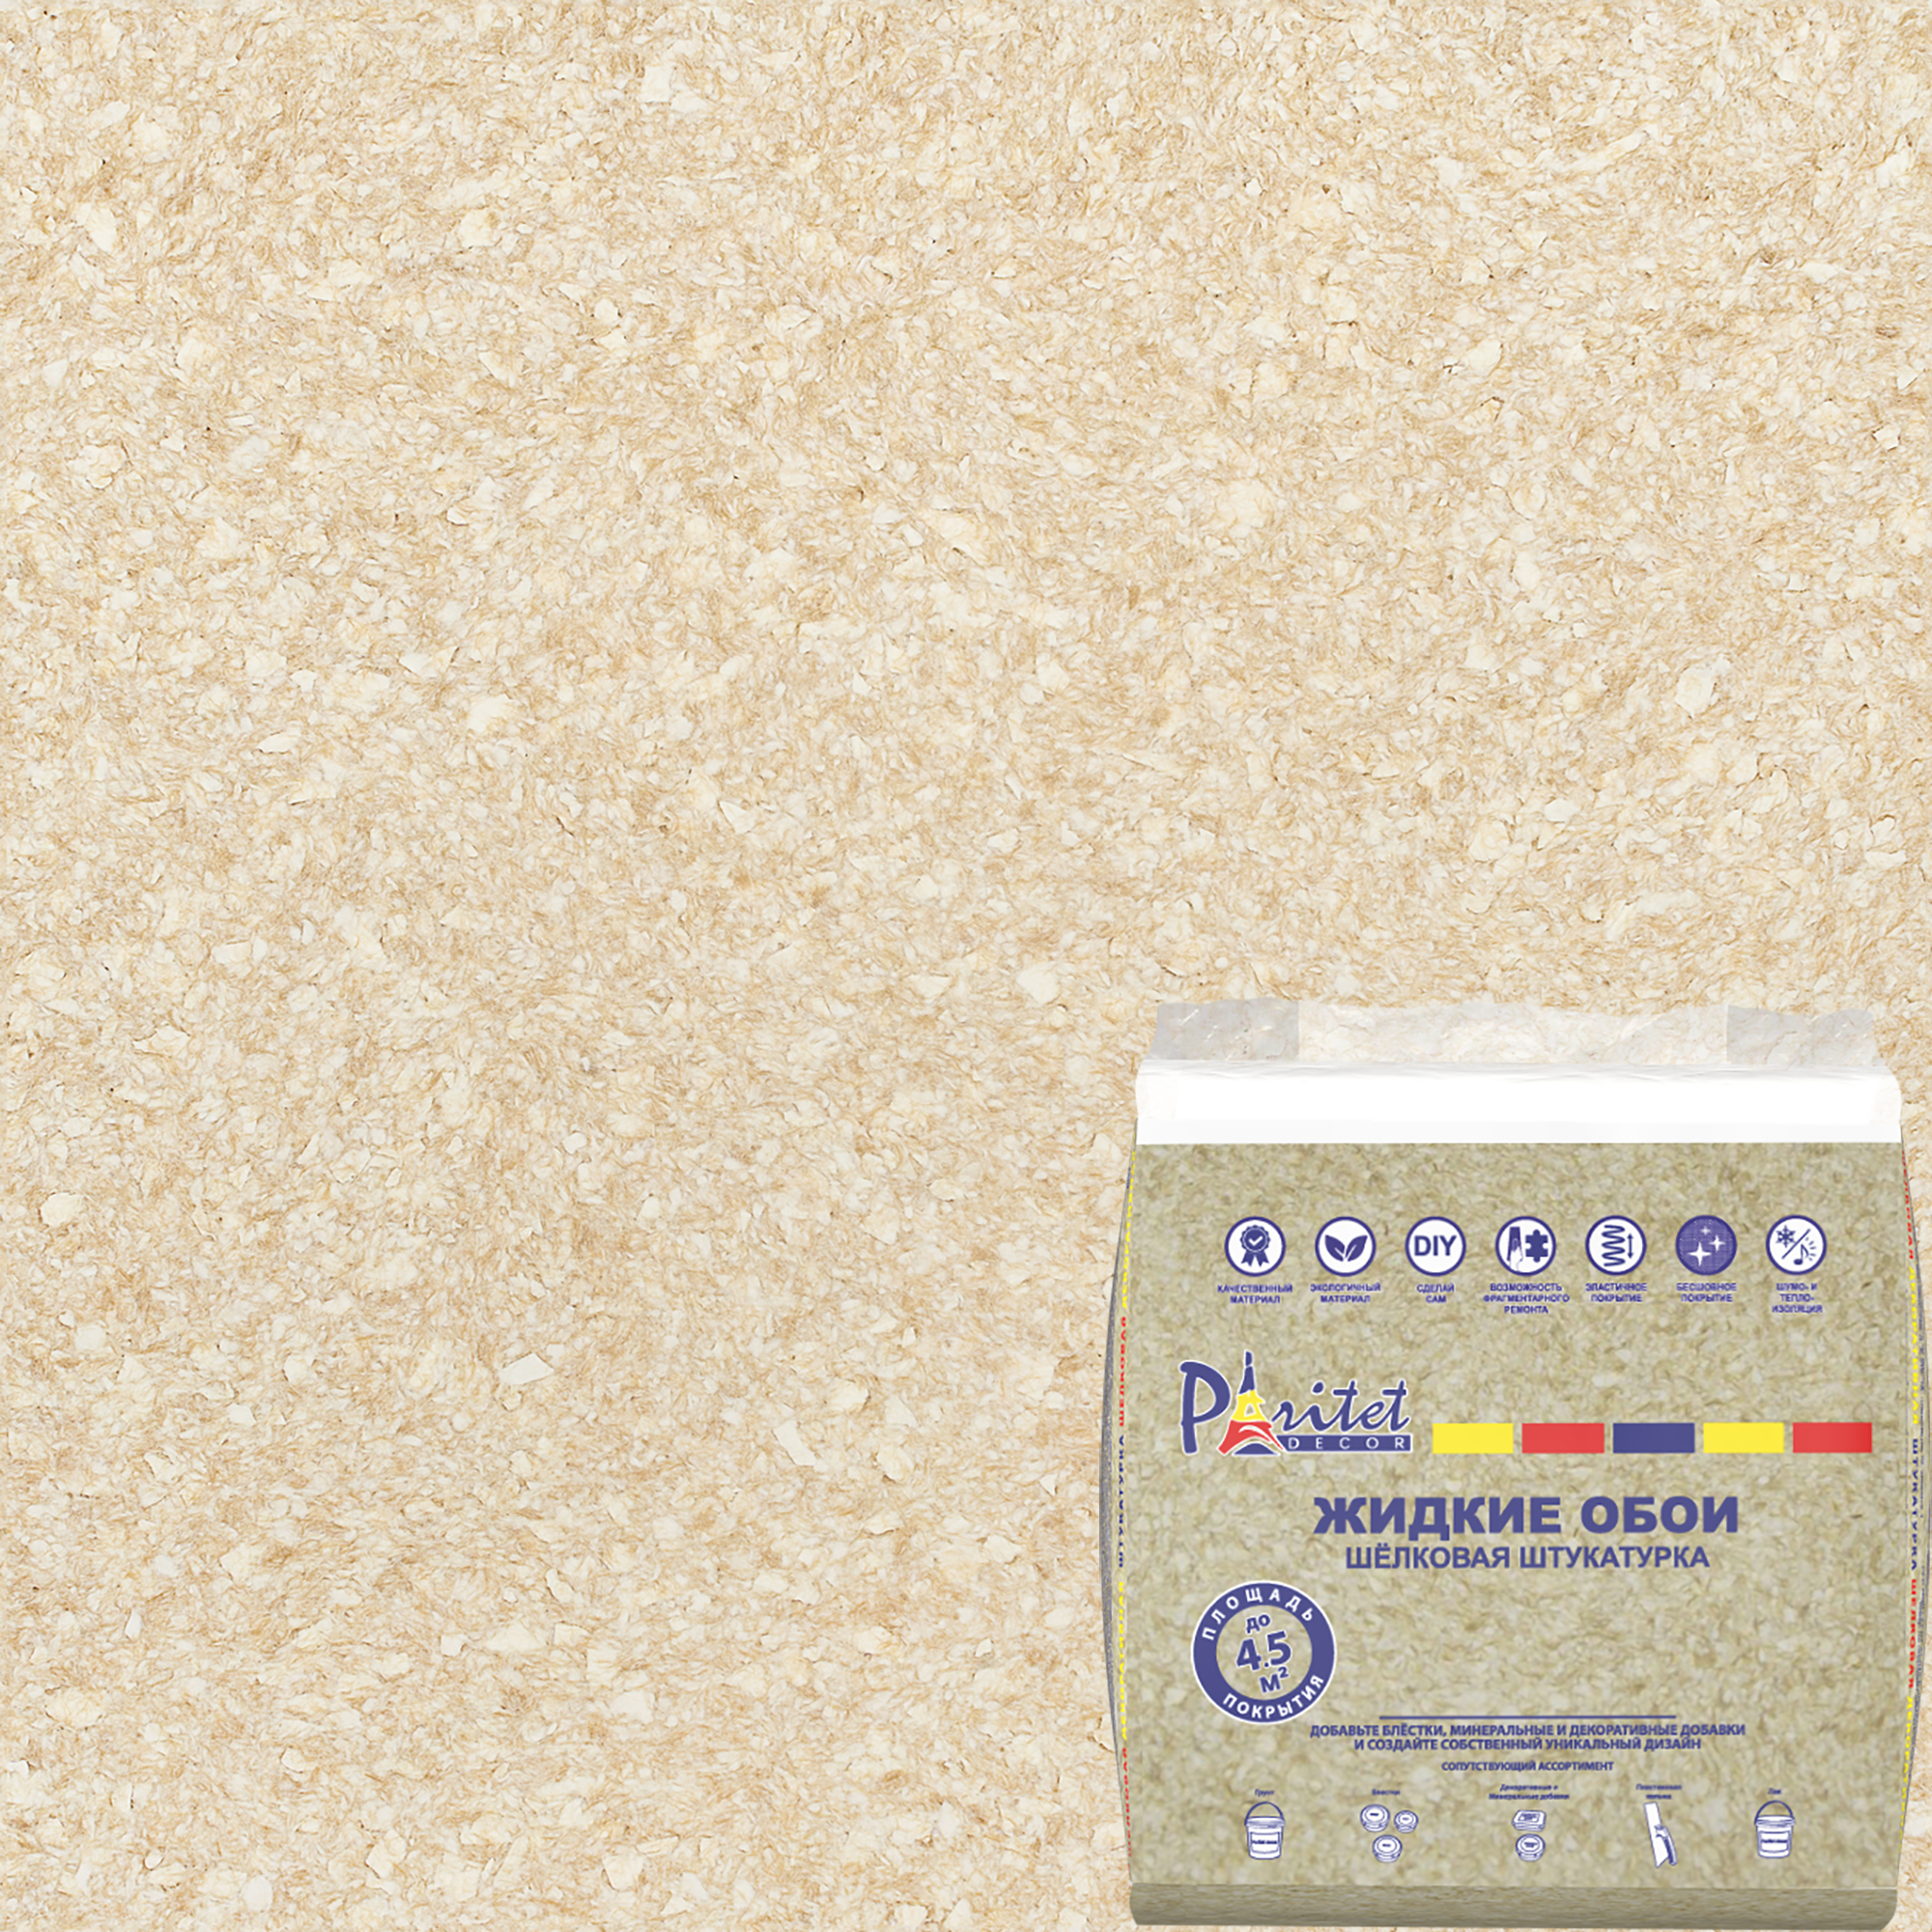 82405614 Жидкие обои Текстурное покрытие 11 0.9 кг цвет песочный STLM-0026807 PARITET